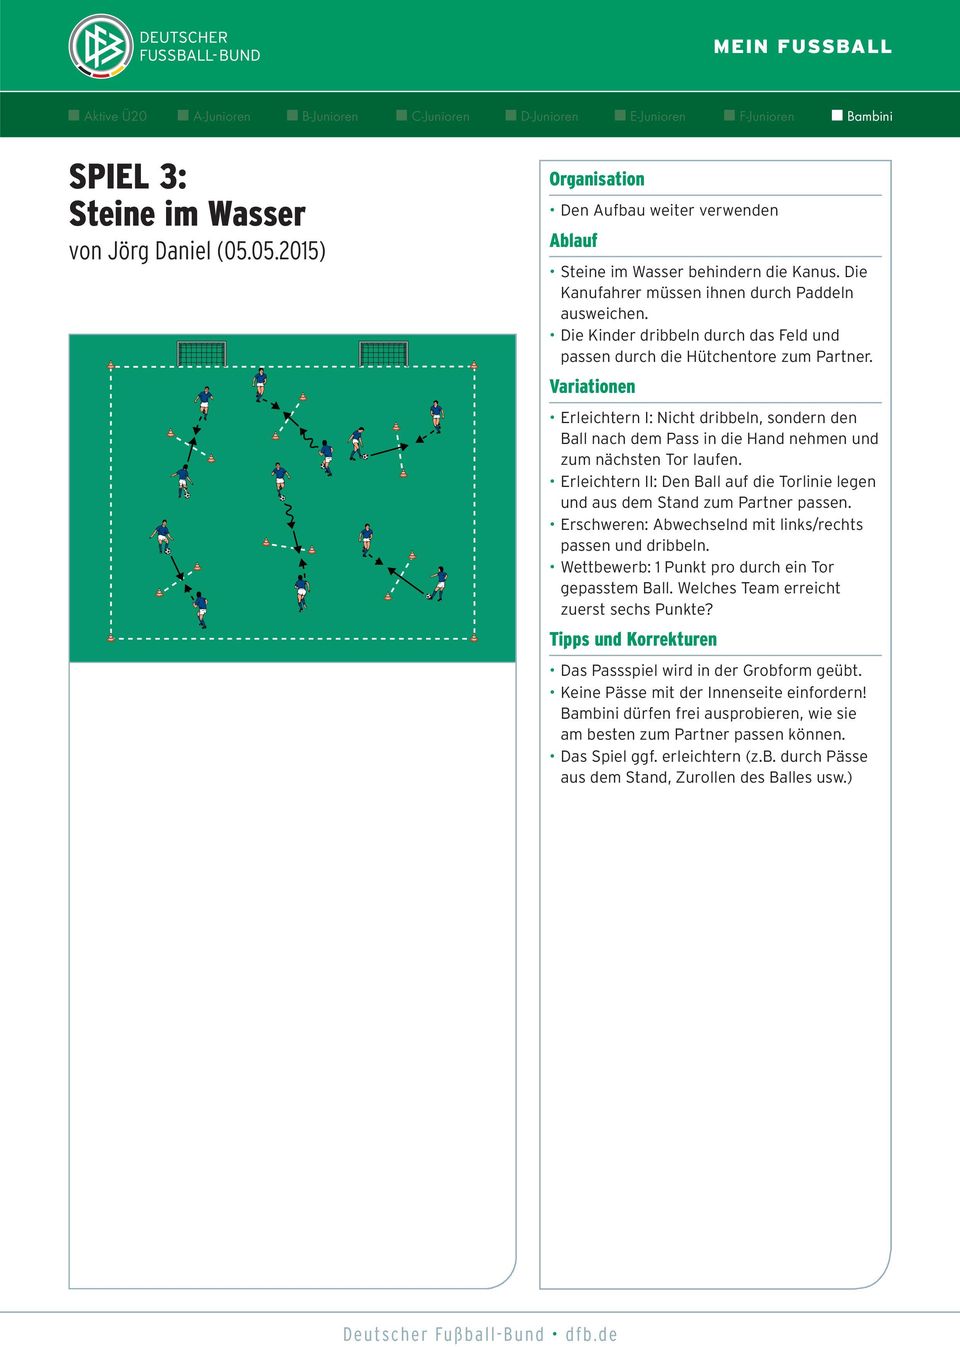 Erleichtern II: Den Ball auf die Torlinie legen und aus dem Stand zum Partner passen. Erschweren: Abwechselnd mit links/rechts passen und dribbeln.